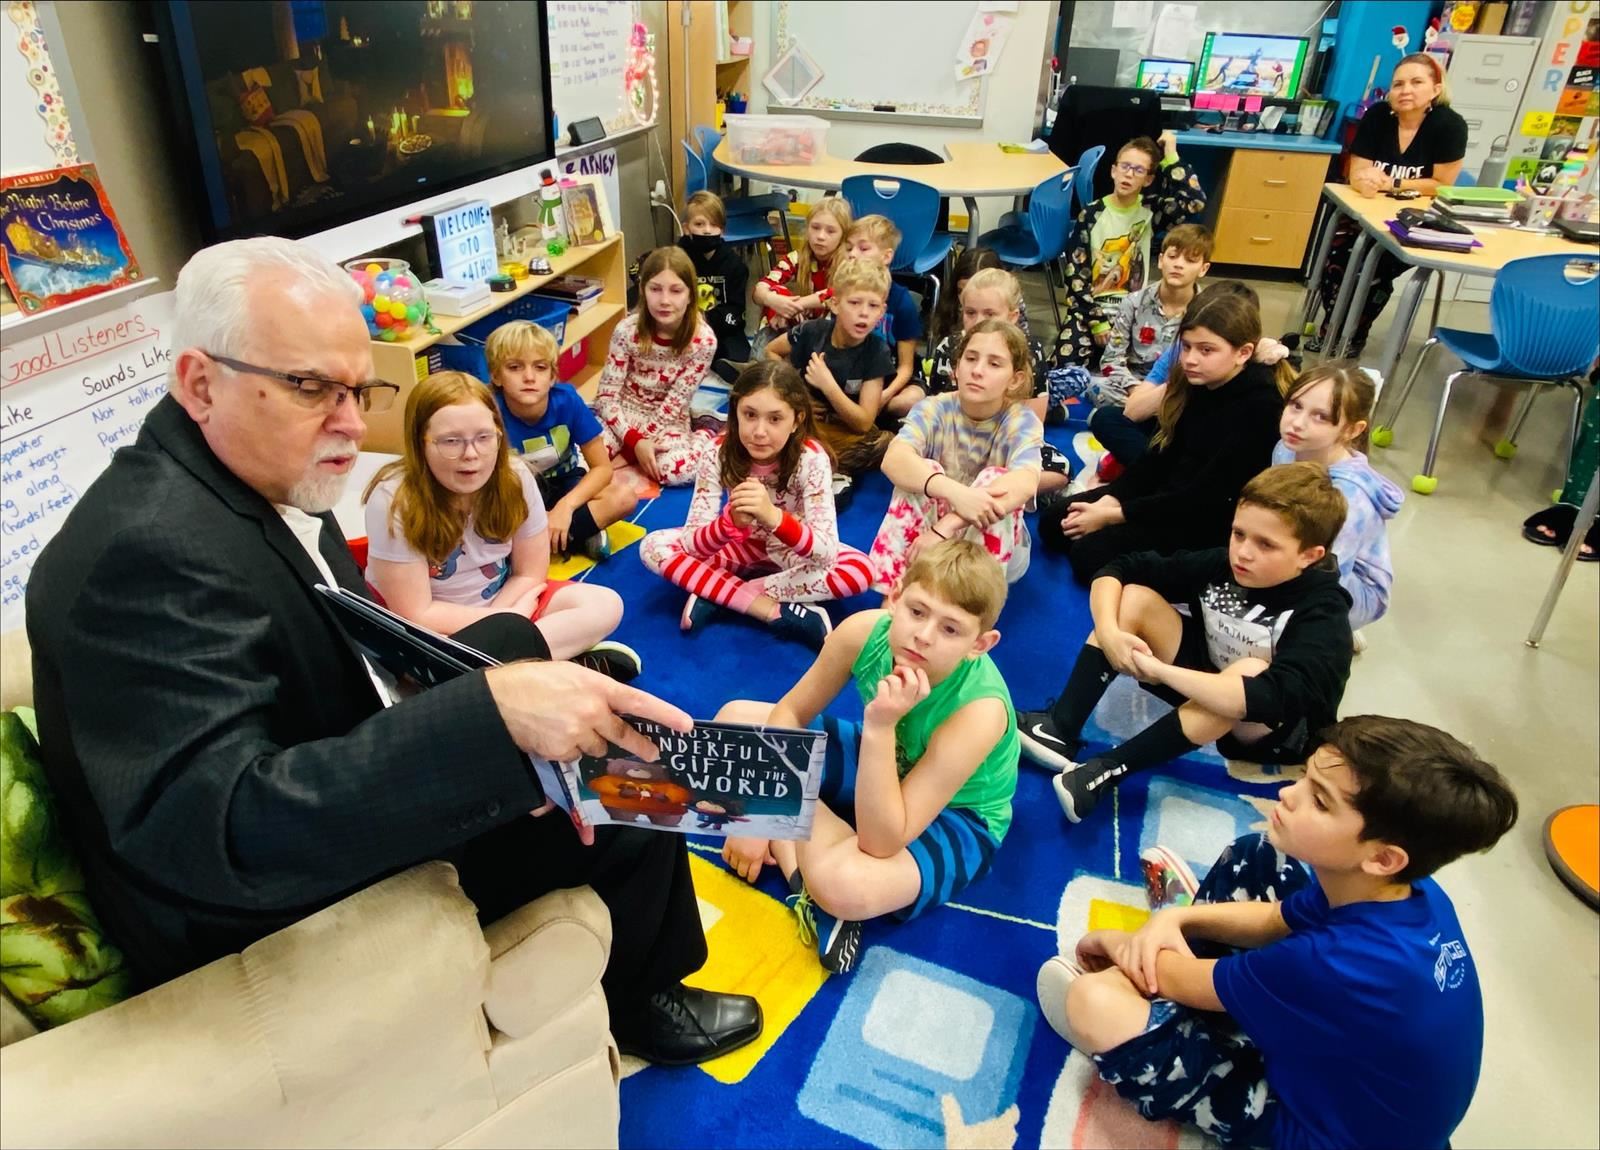 Superintendent Reading to Children